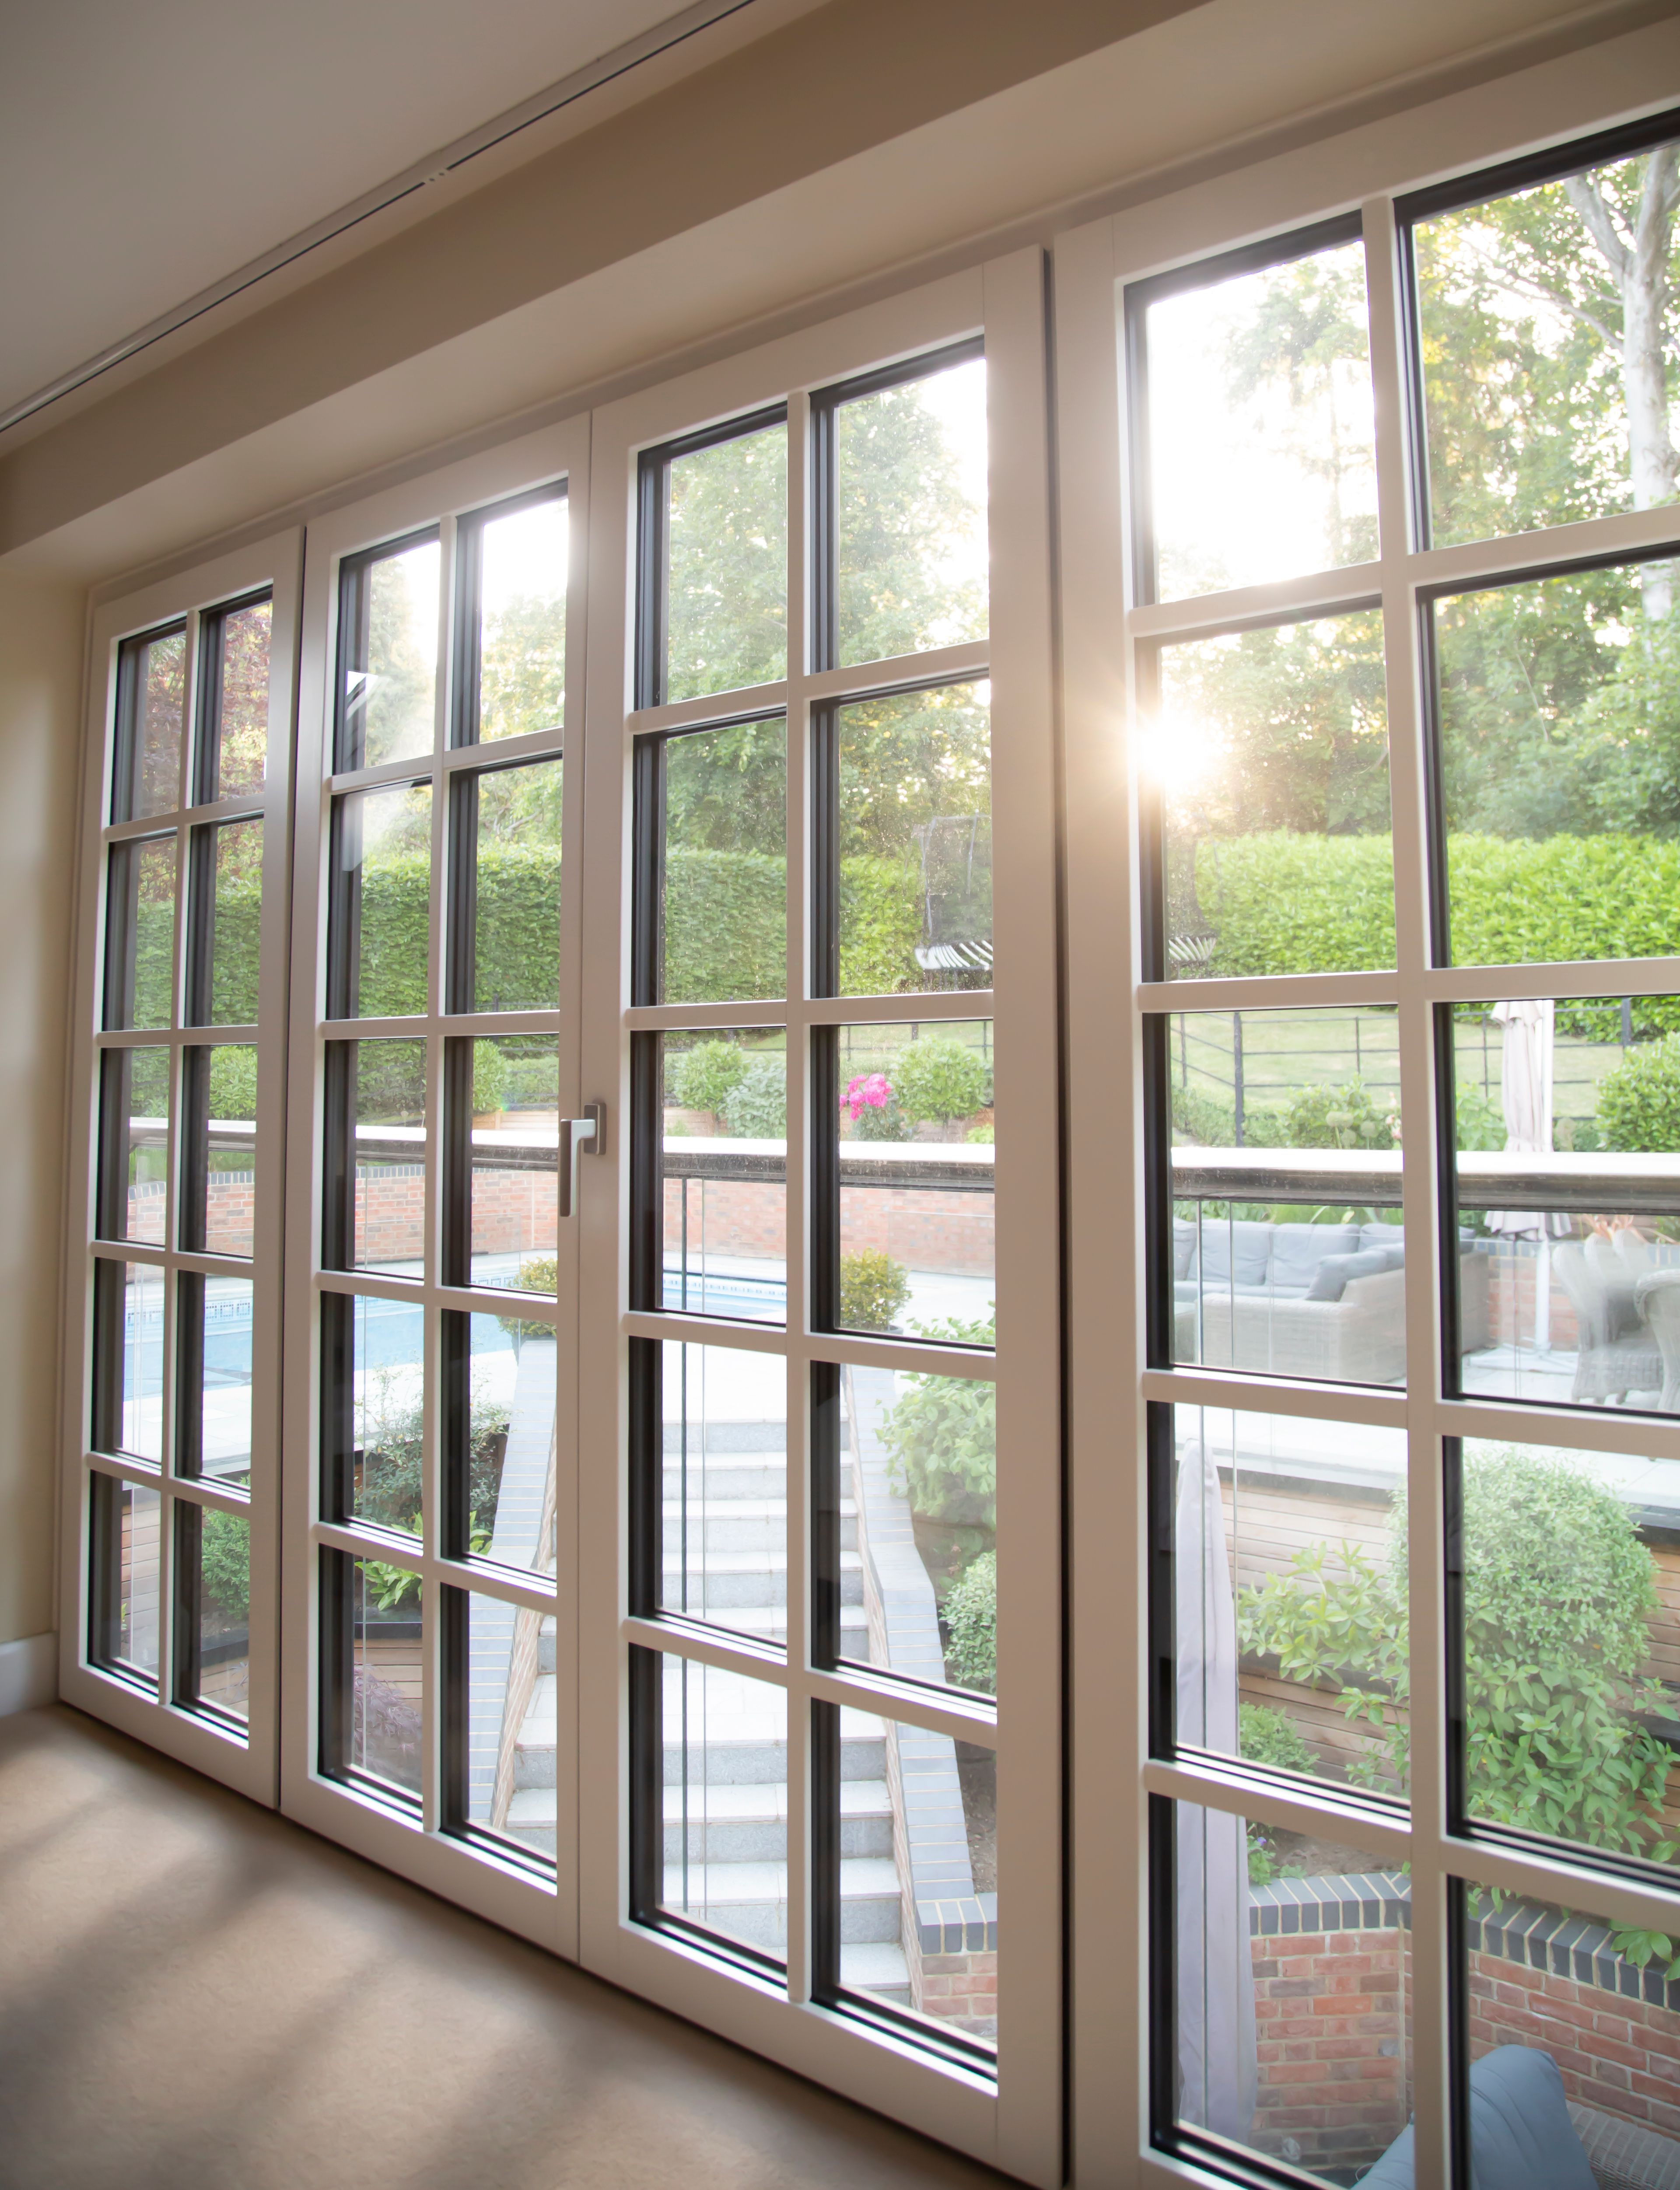 Transform your home with Timber-Aluminium Windows & Doors